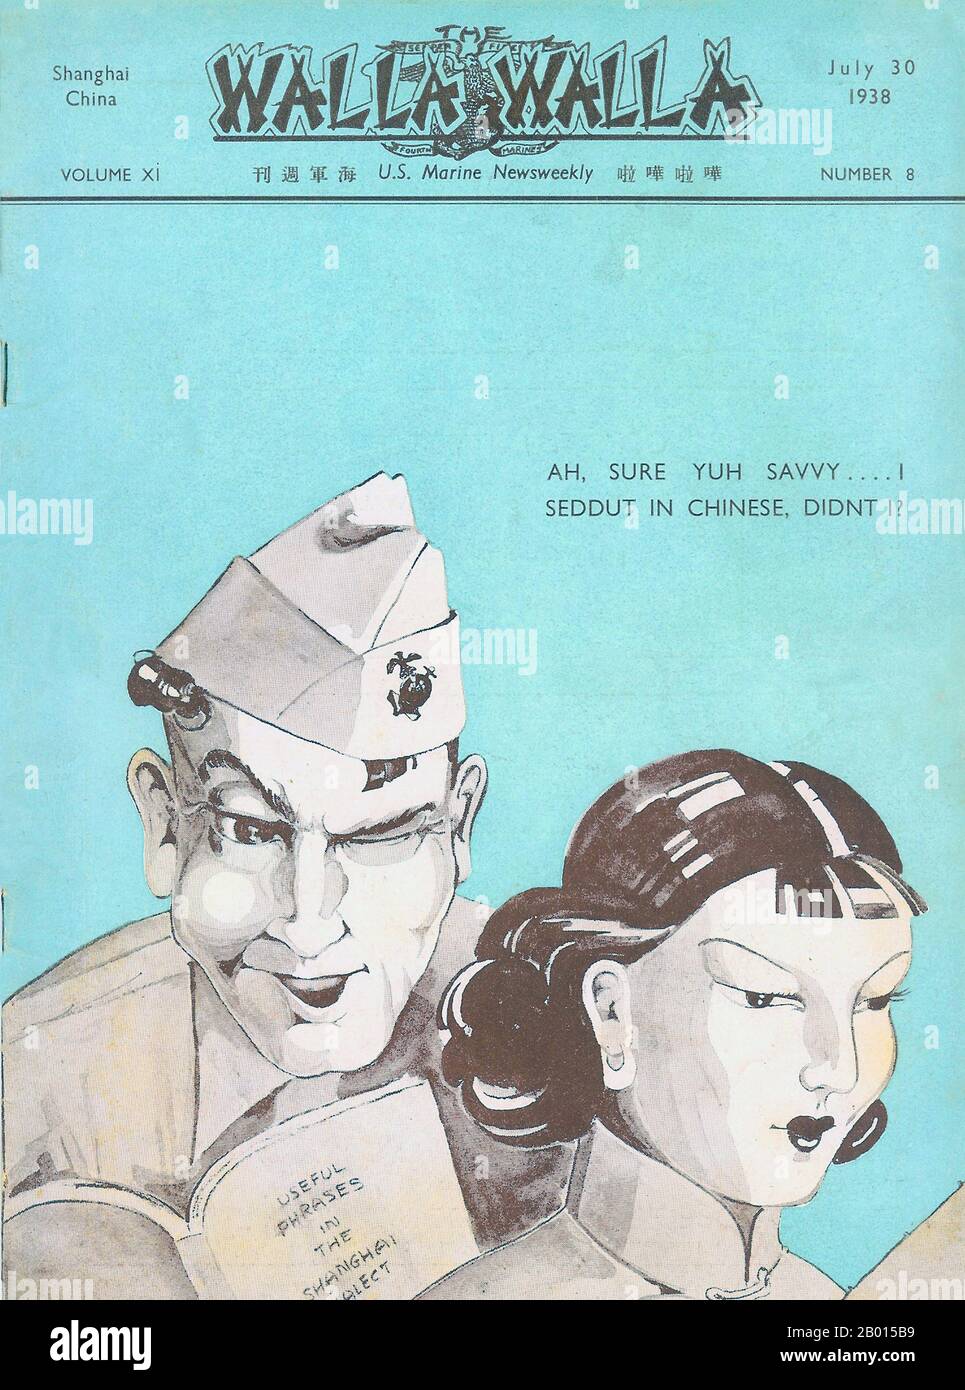 China: Frontcover von Walla Walla, US Marine News Weekly, Juli 30 1938. Satirischer Cartoon über das Lernen der US-Marine Shanghainisch oder Wu-Dialekt auf Chinesisch. Stockfoto